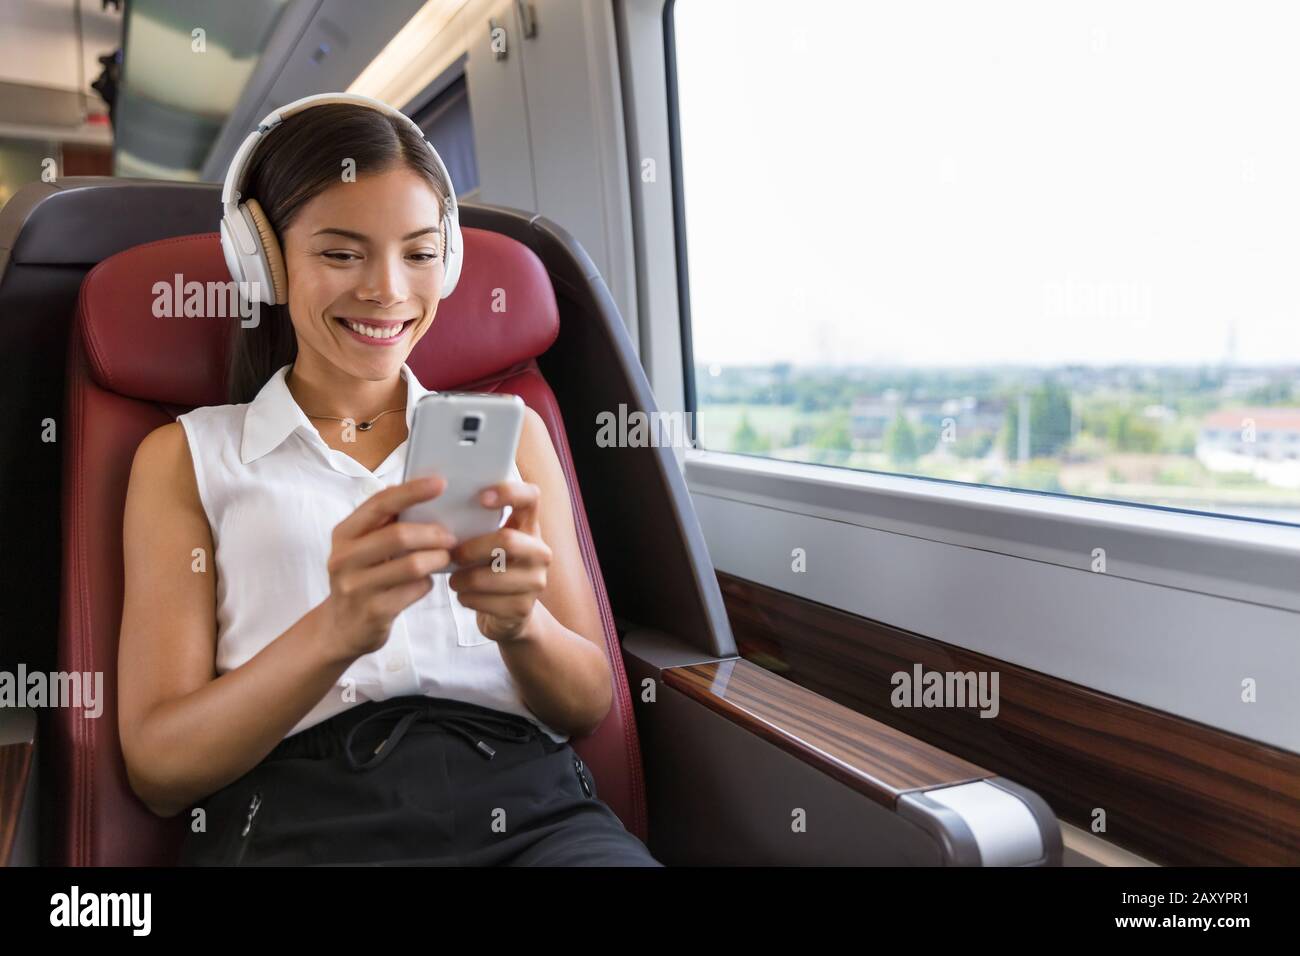 Moderner Lebensstil der Menschen in der Stadt. Junge urbane Frau mit Telefon-App und kabellosen Kopfhörern, um Musik zu hören oder Videospiele online zu spielen. Asiatische Mädchen genießen Zugfahrt auf dem Sitz der Business-Klasse. Stockfoto